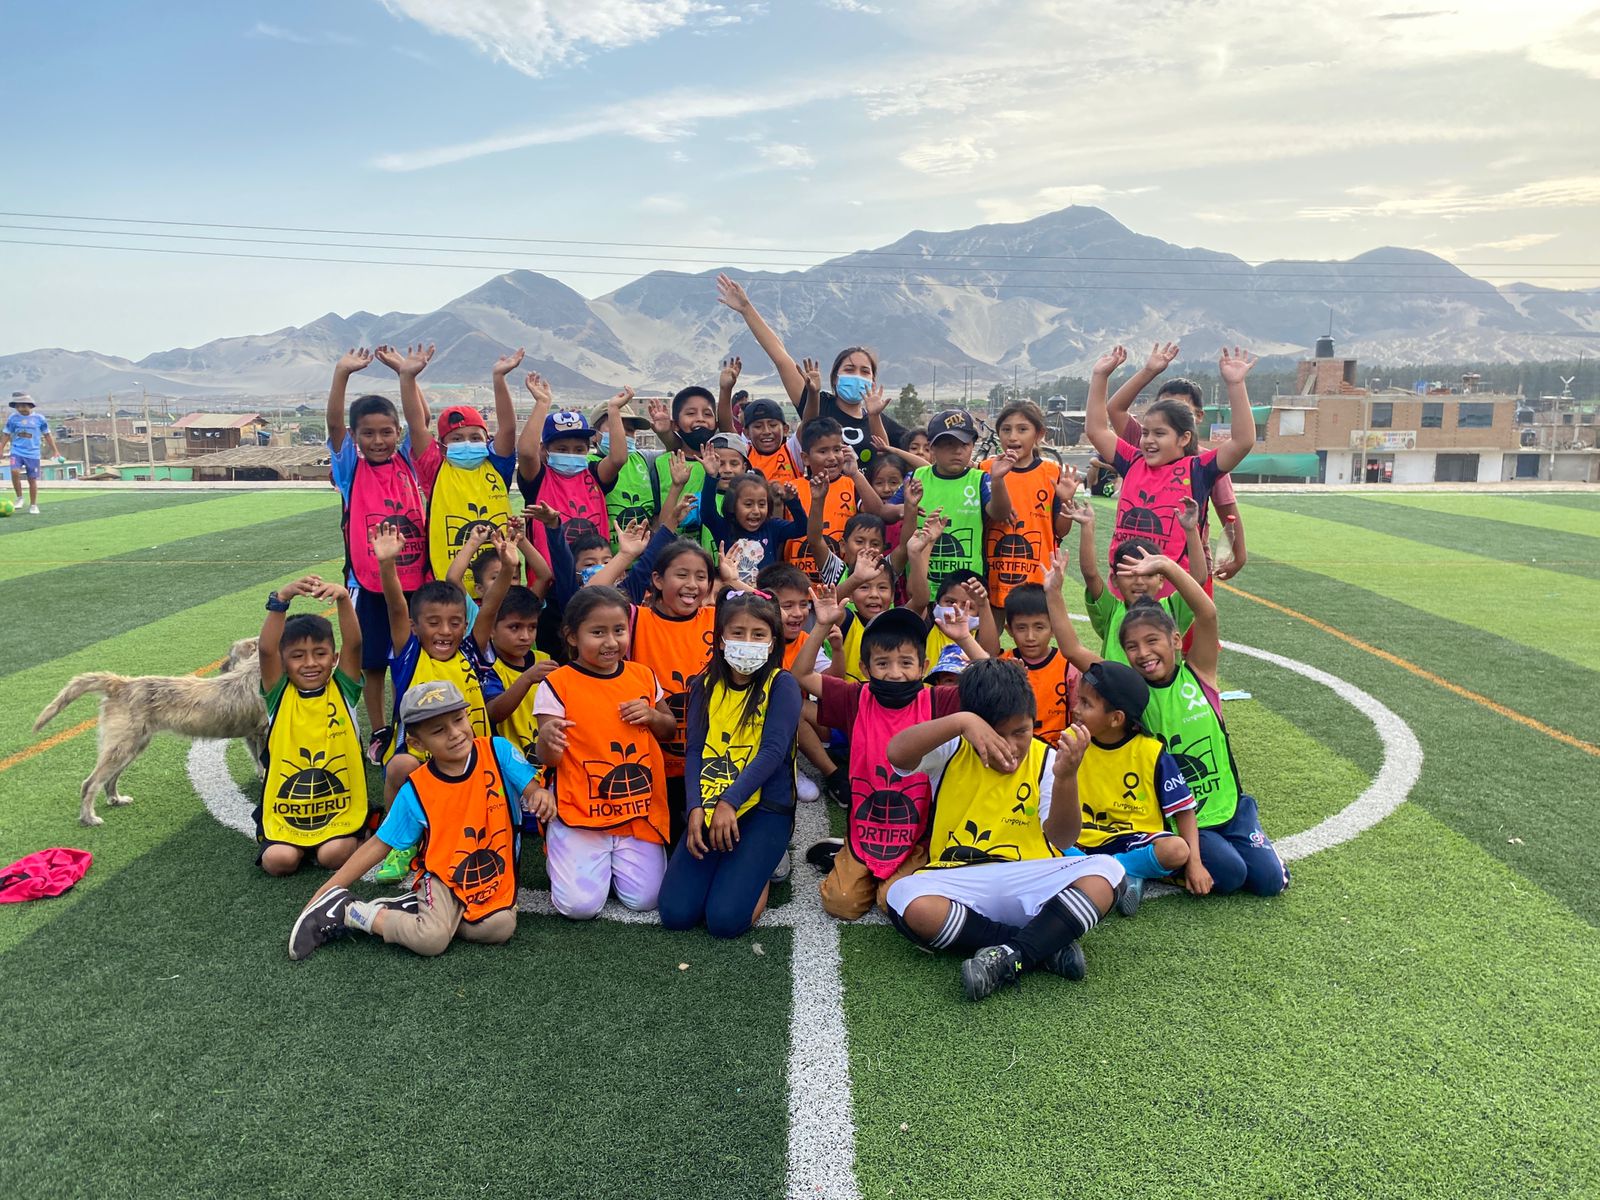 Más de 150 niños y niñas de familias del agro en Chao desarrollan sus habilidades físicas y sociales a través del programa “Futbol Más con Hortifrut”